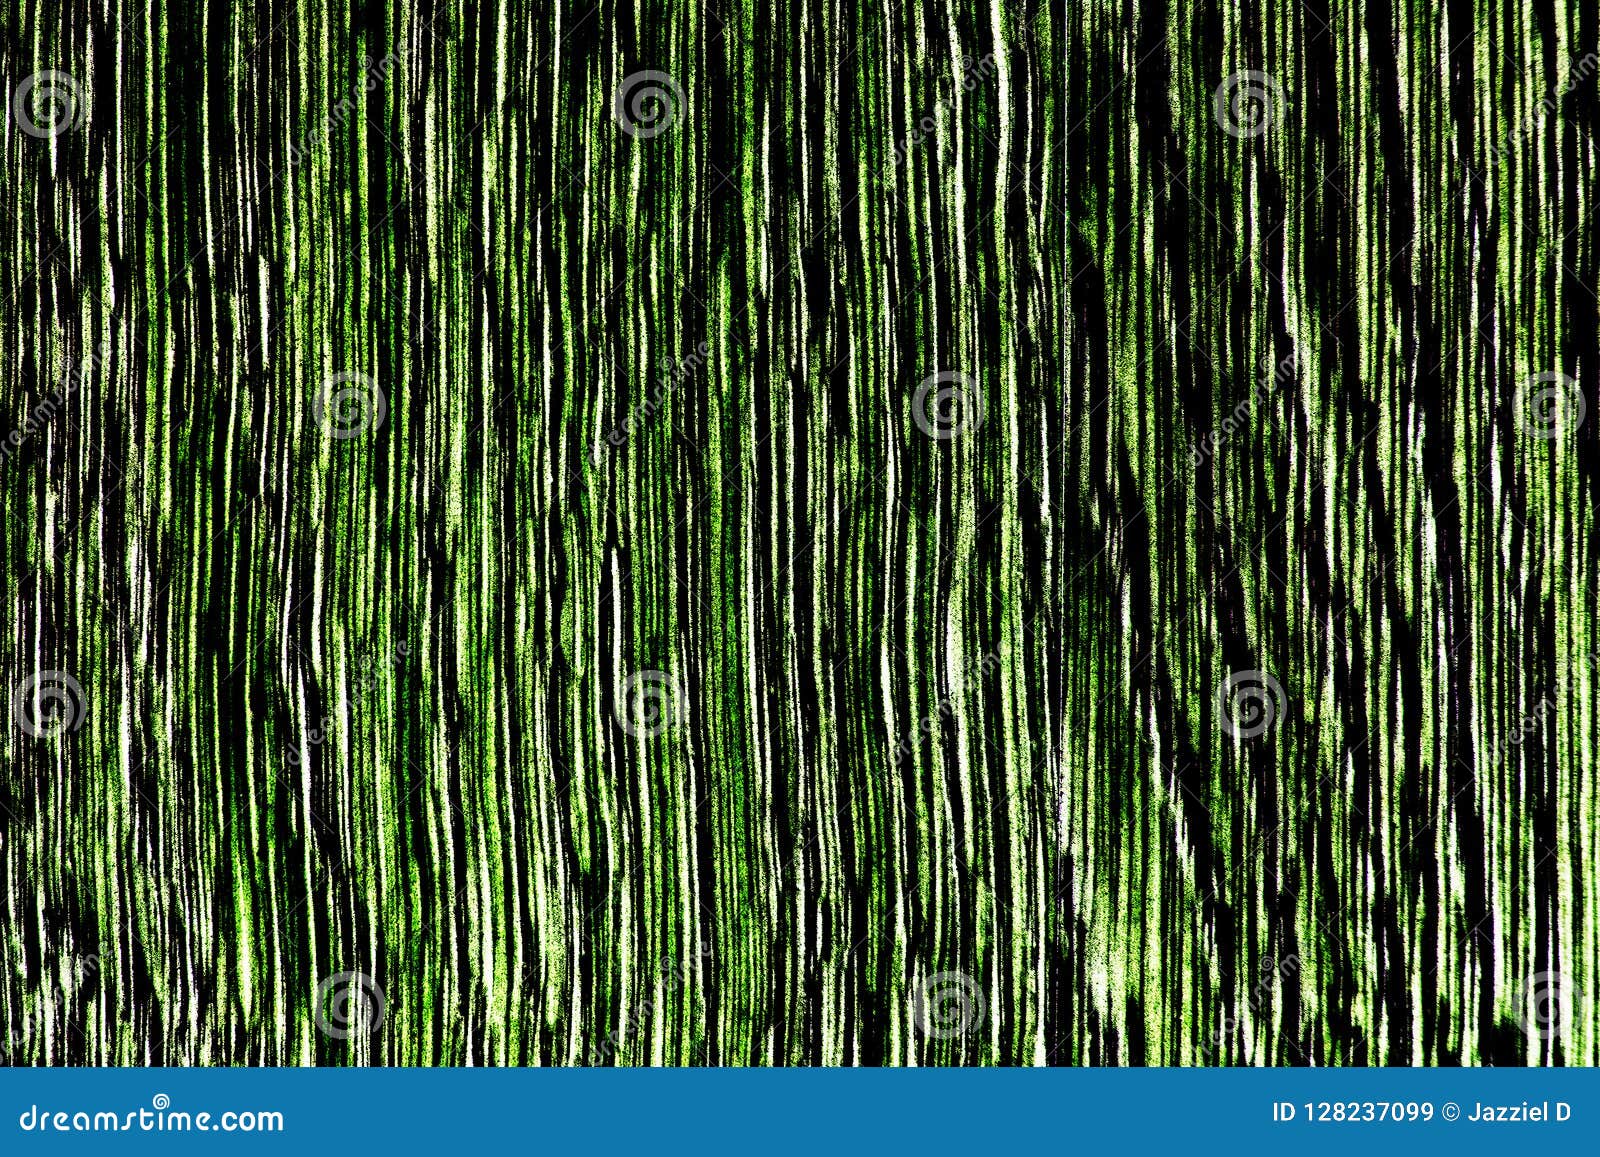 high contrast wooden texture in green tones